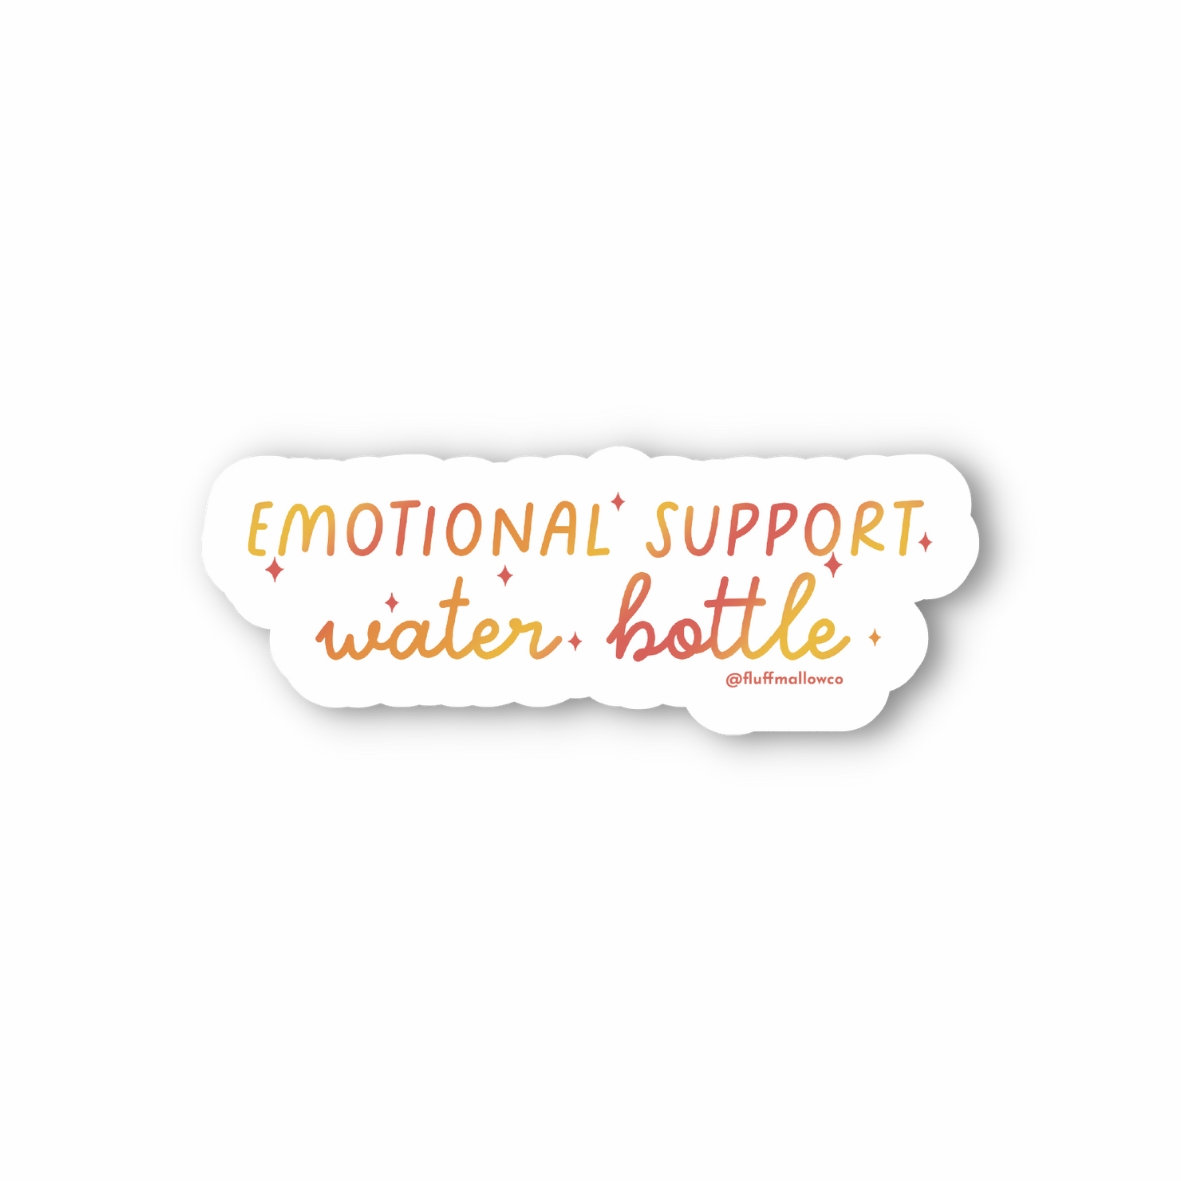 Emotional support water bottle vinyl sticker